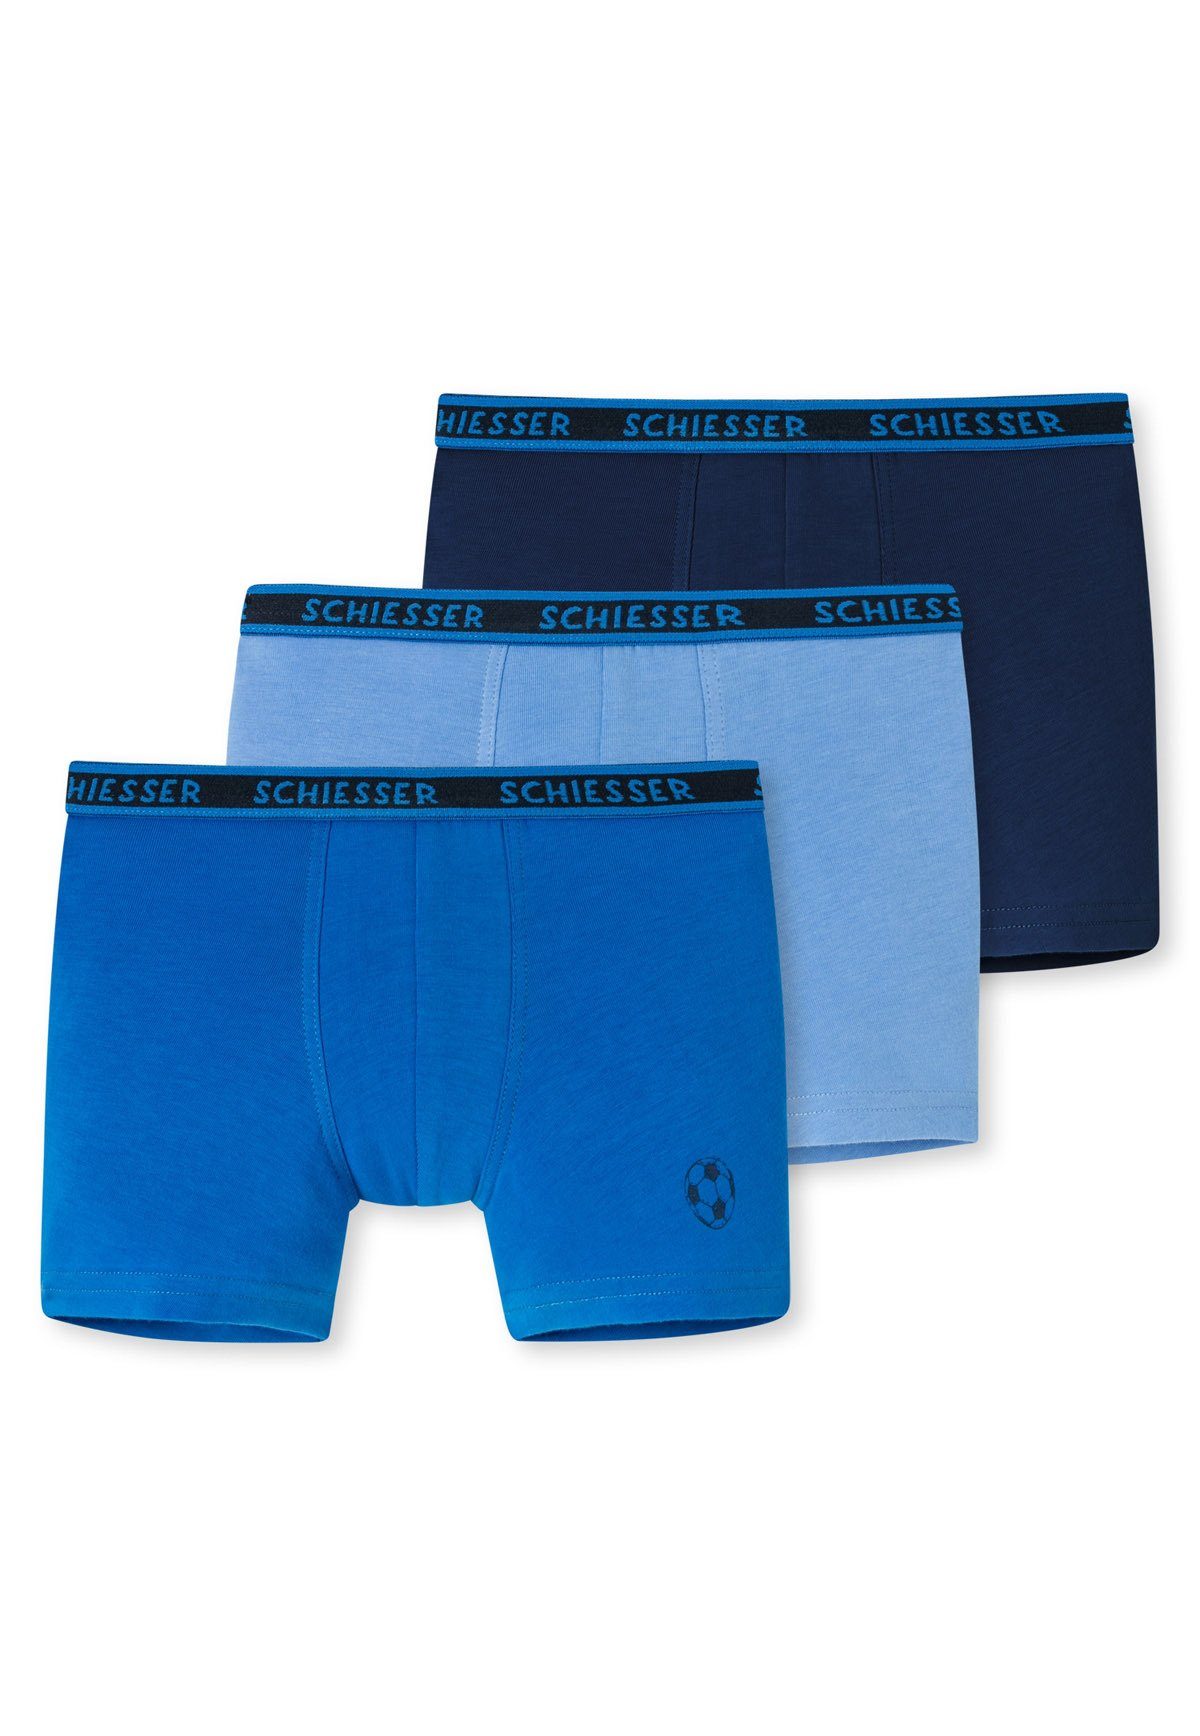 (2) Pack Boxer 3er Jungen Shorts Unterhose, Schiesser - Hellblau/Blau/Dunkelblau Hip Shorts